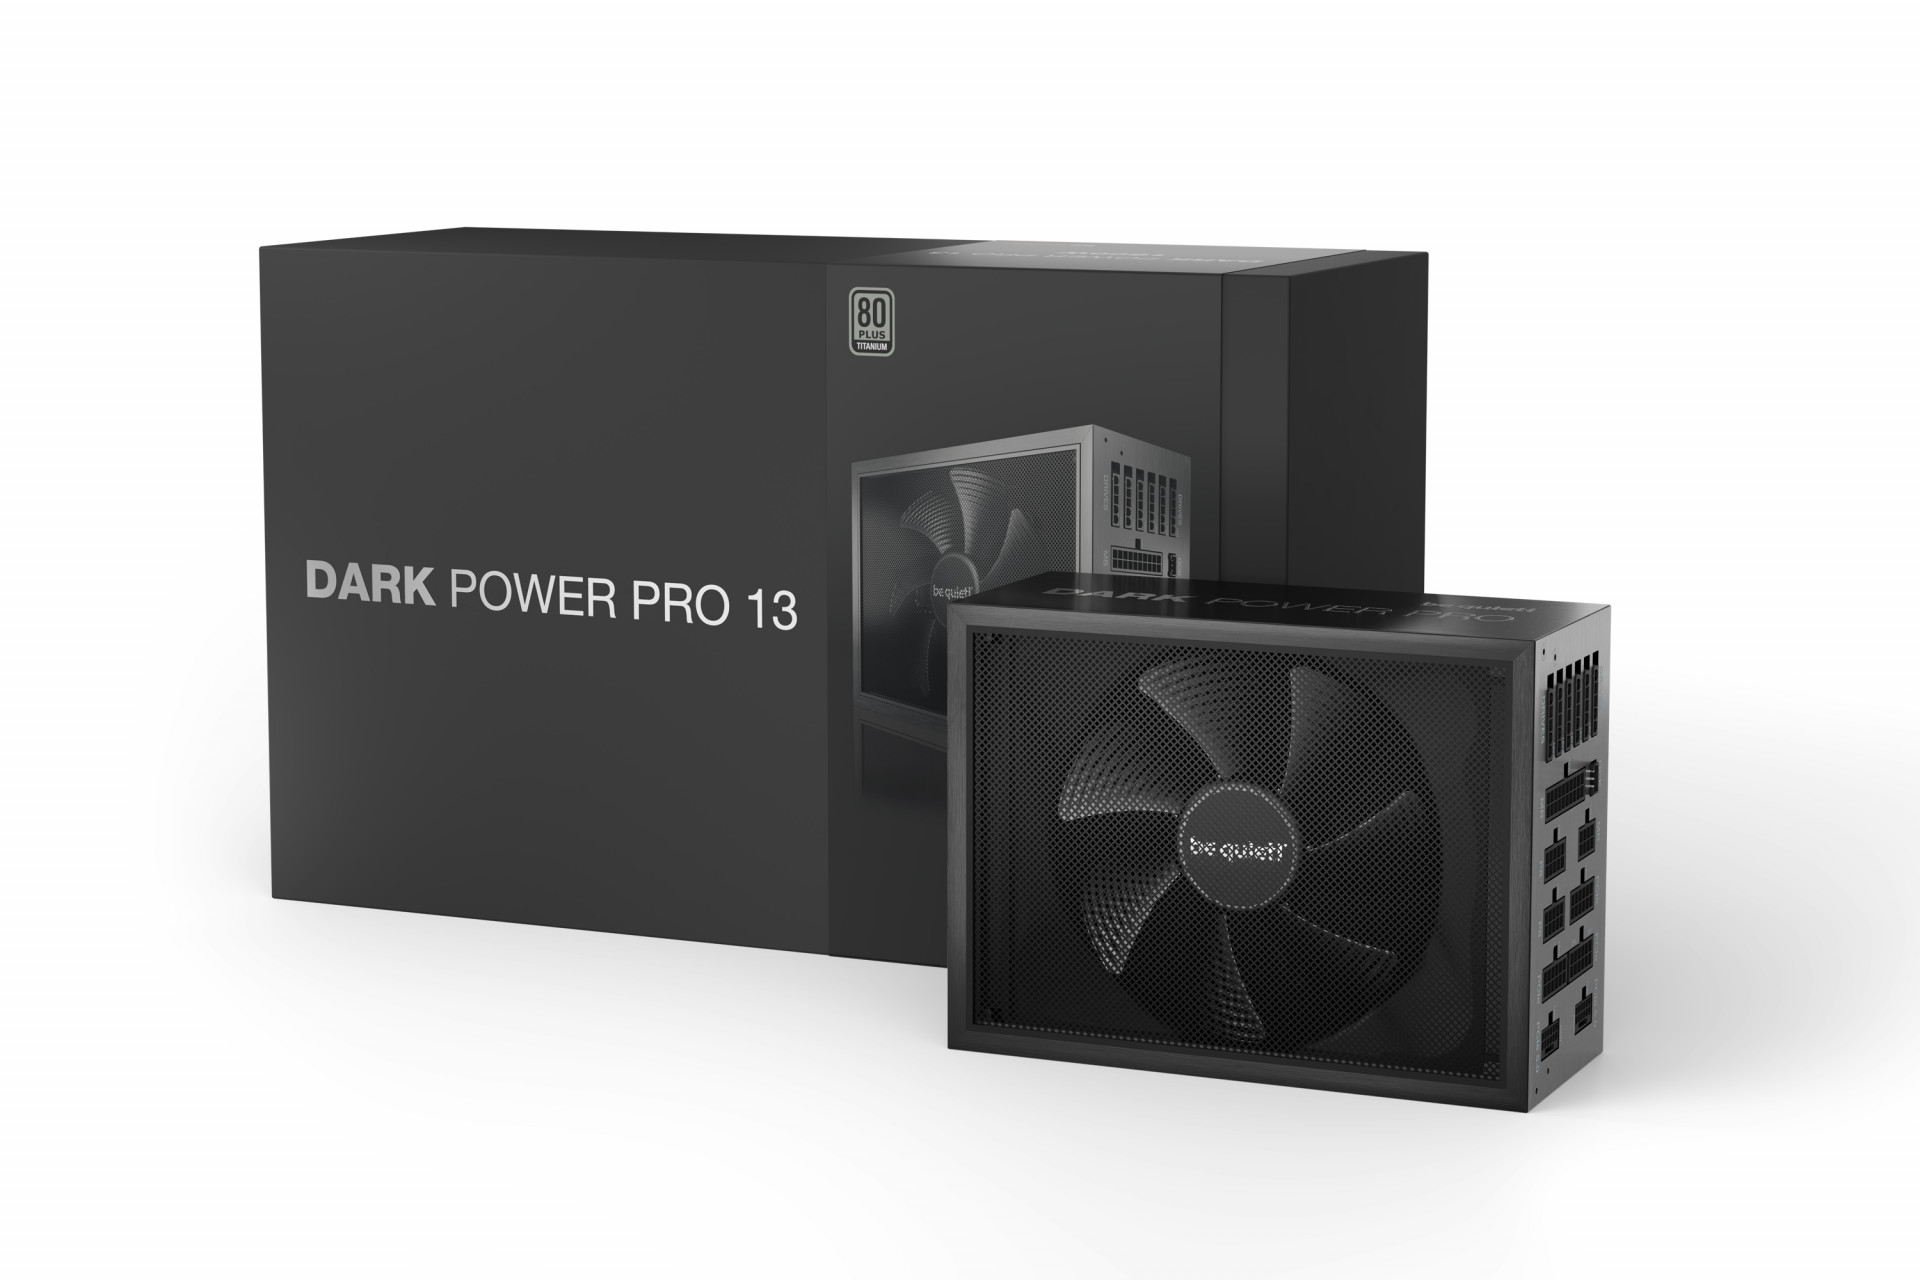 be quiet! Dark Power Pro 13: полностью цифровой ATX 3.0 блок питания с невероятной производительностью и стабильностью